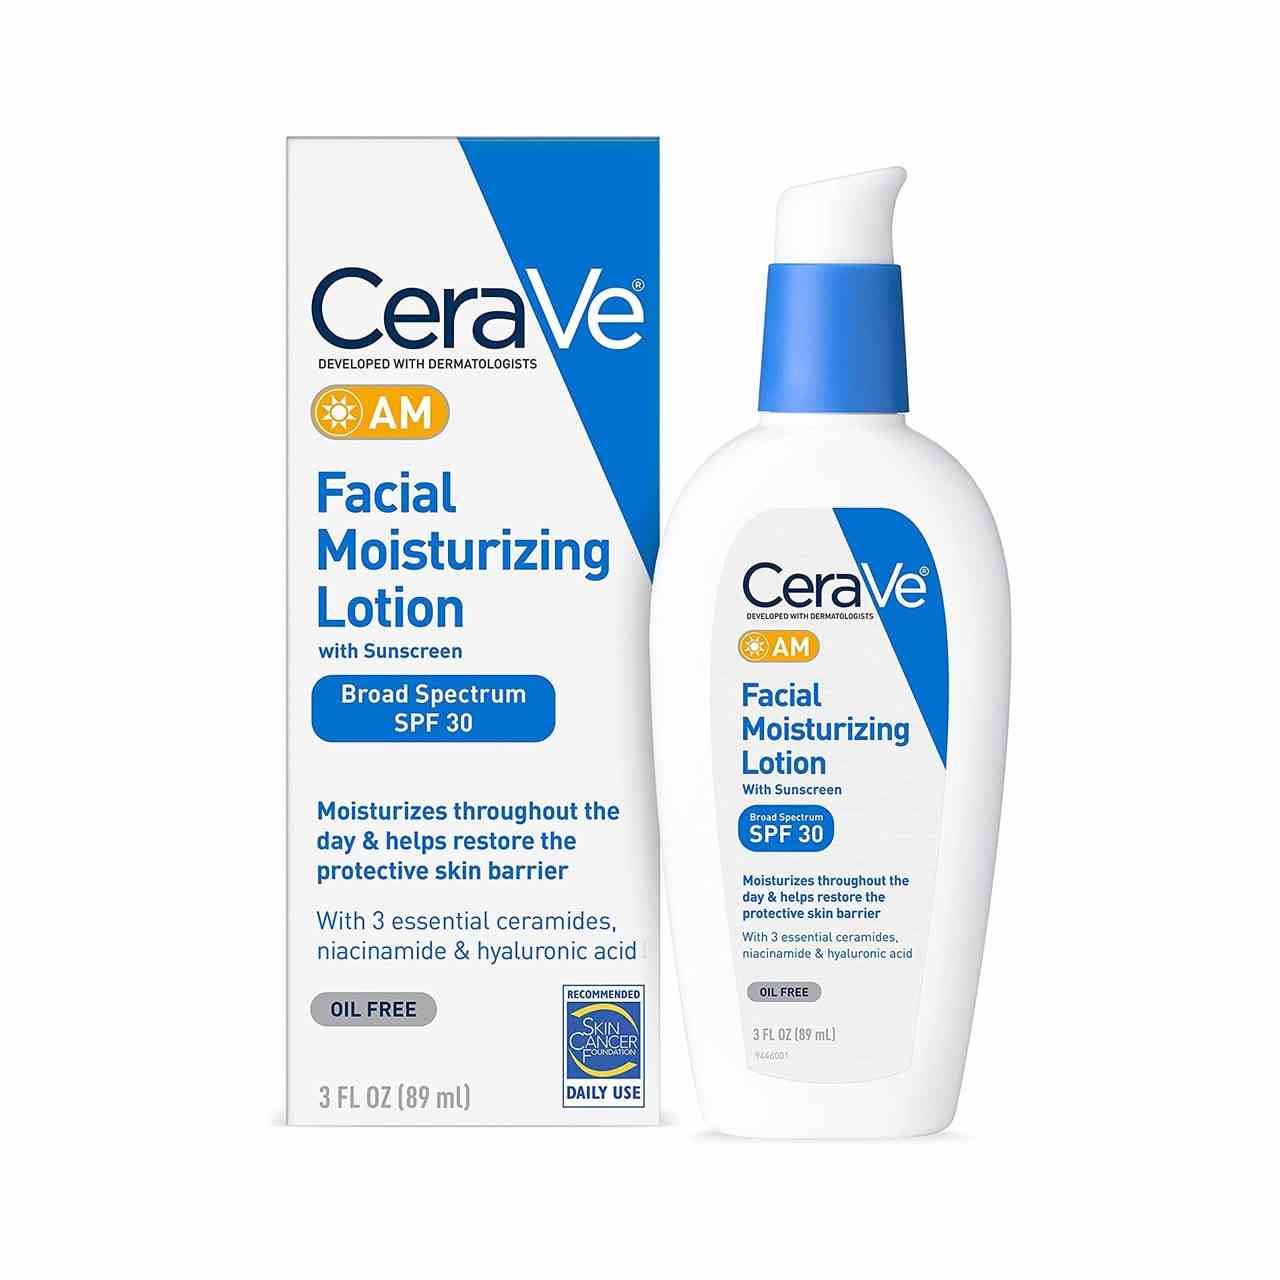 CeraVe AM Facial Moisturizing Lotion SPF 30 blau-weiße Flasche Lotion mit passender Box auf weißem Hintergrund